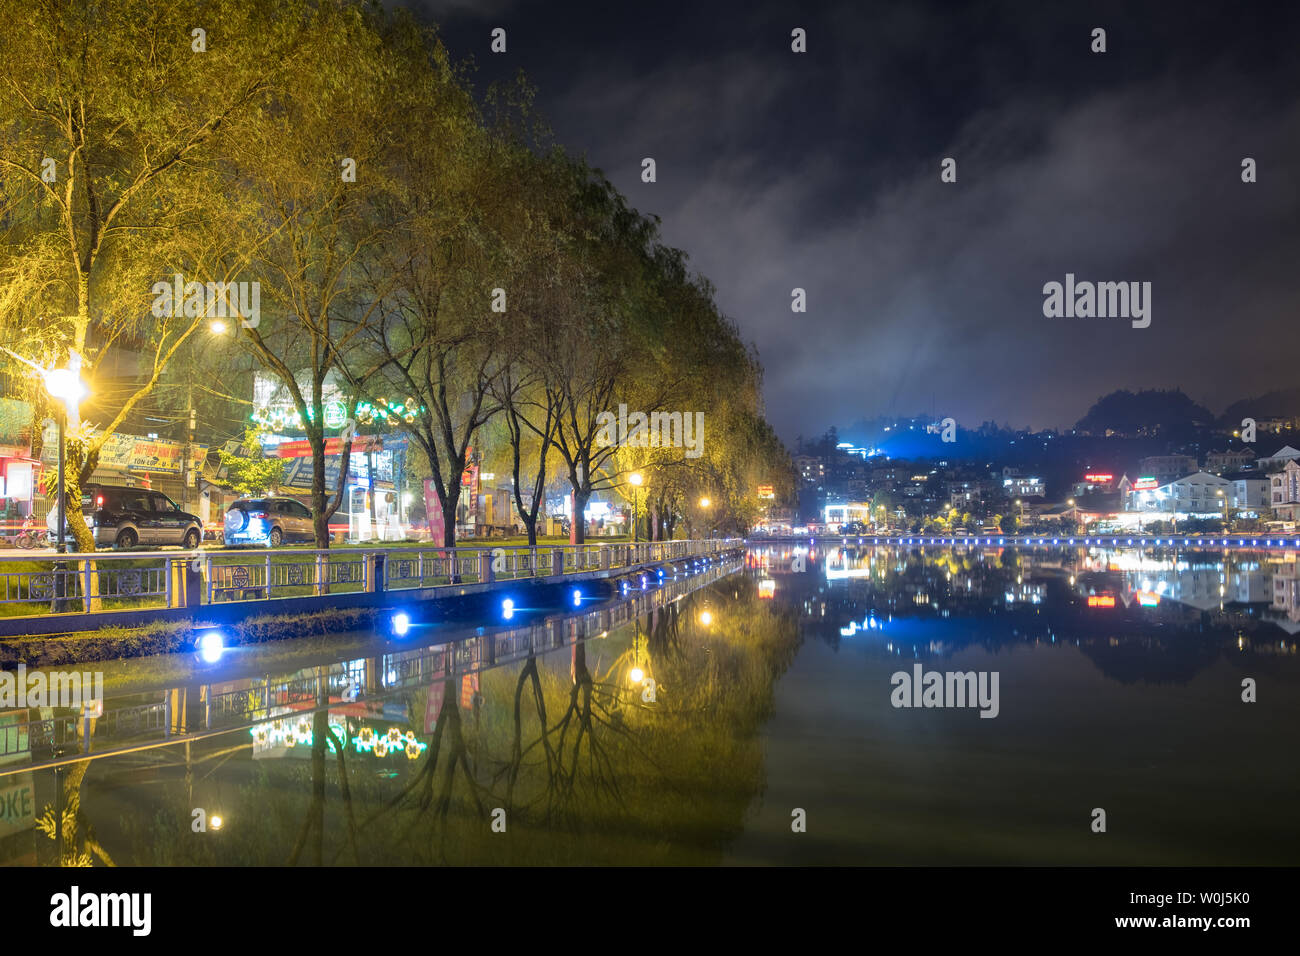 Sapa, Vietnam: 07.September 2017: Blickpunkt Lagune dekoriert schöne Lichter mit Weiden Baum in Wellington City, Vietnam Stockfoto